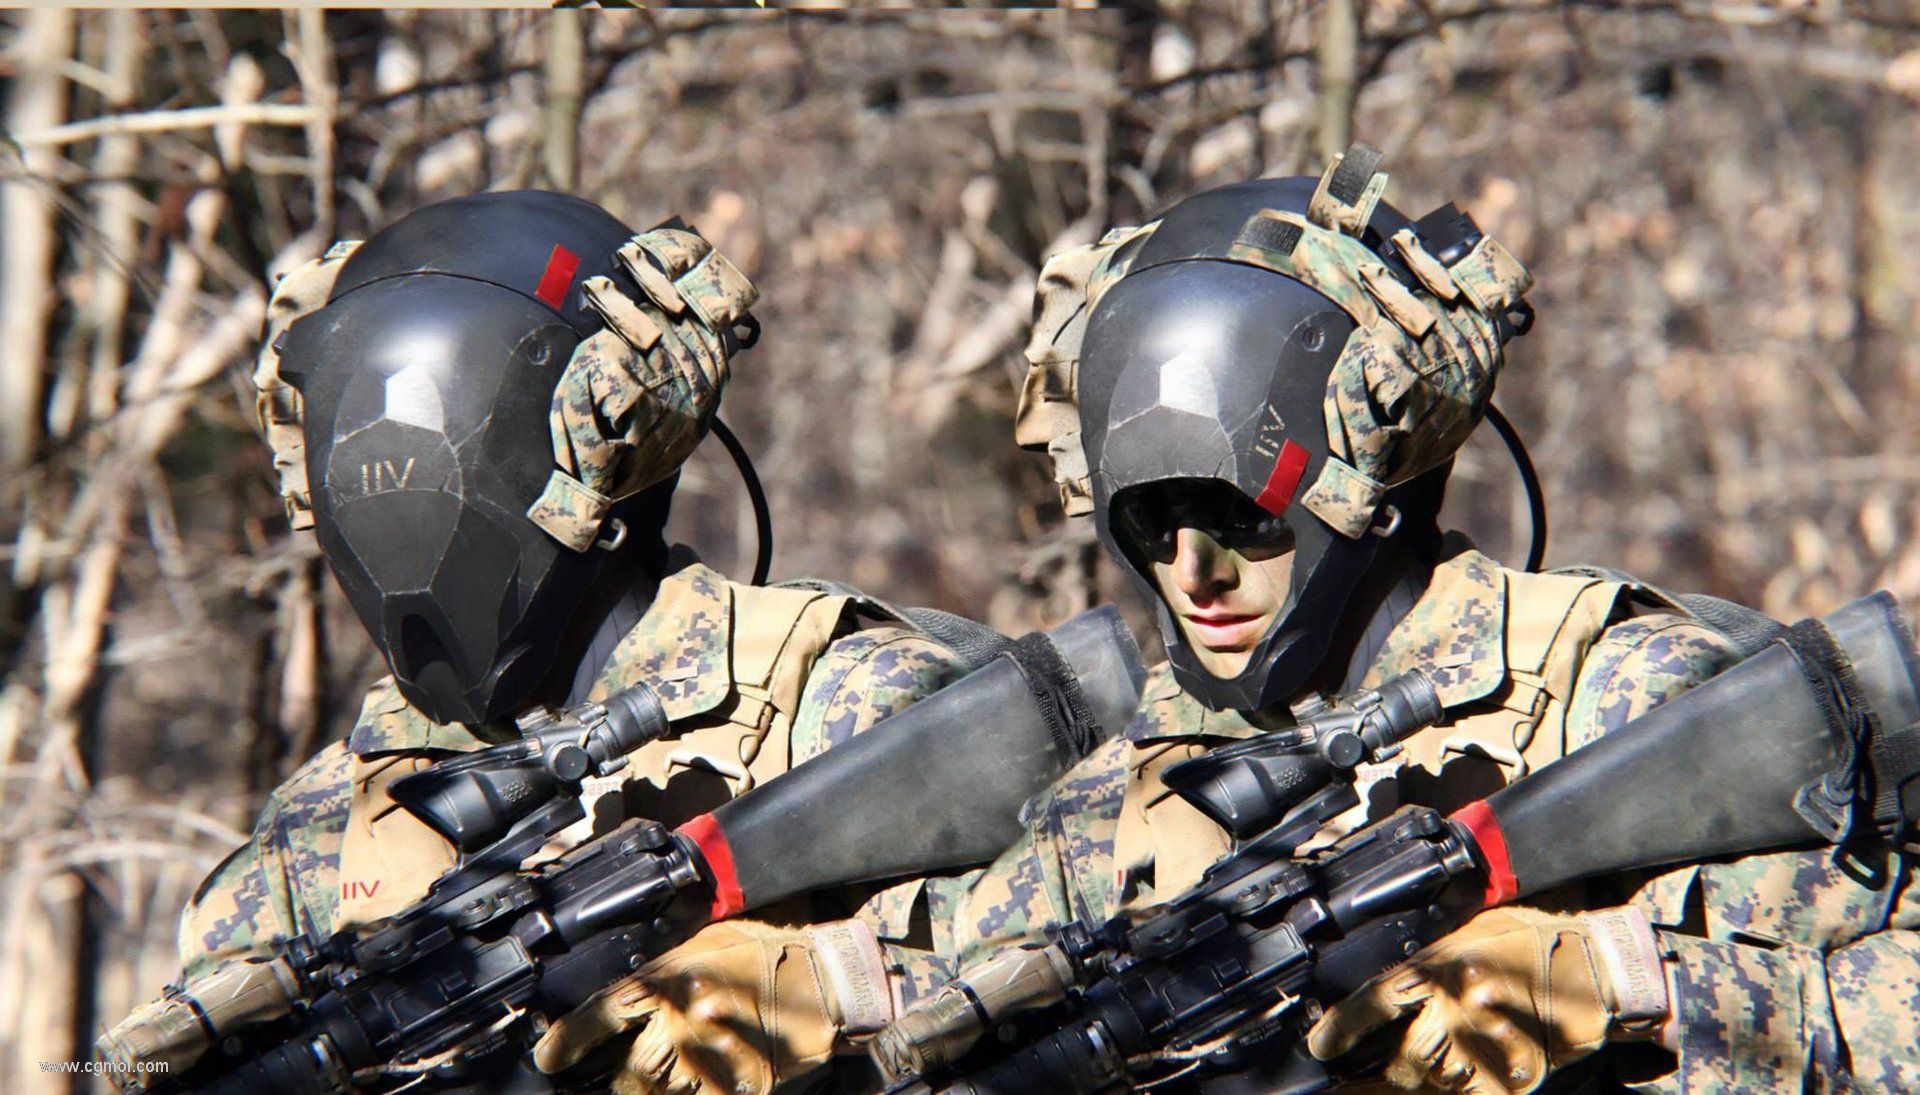 战士 军人 士兵 特种兵 陆军 迷彩服 特警 模型-男人模型库-3ds Max(.max)模型下载-cg模型网